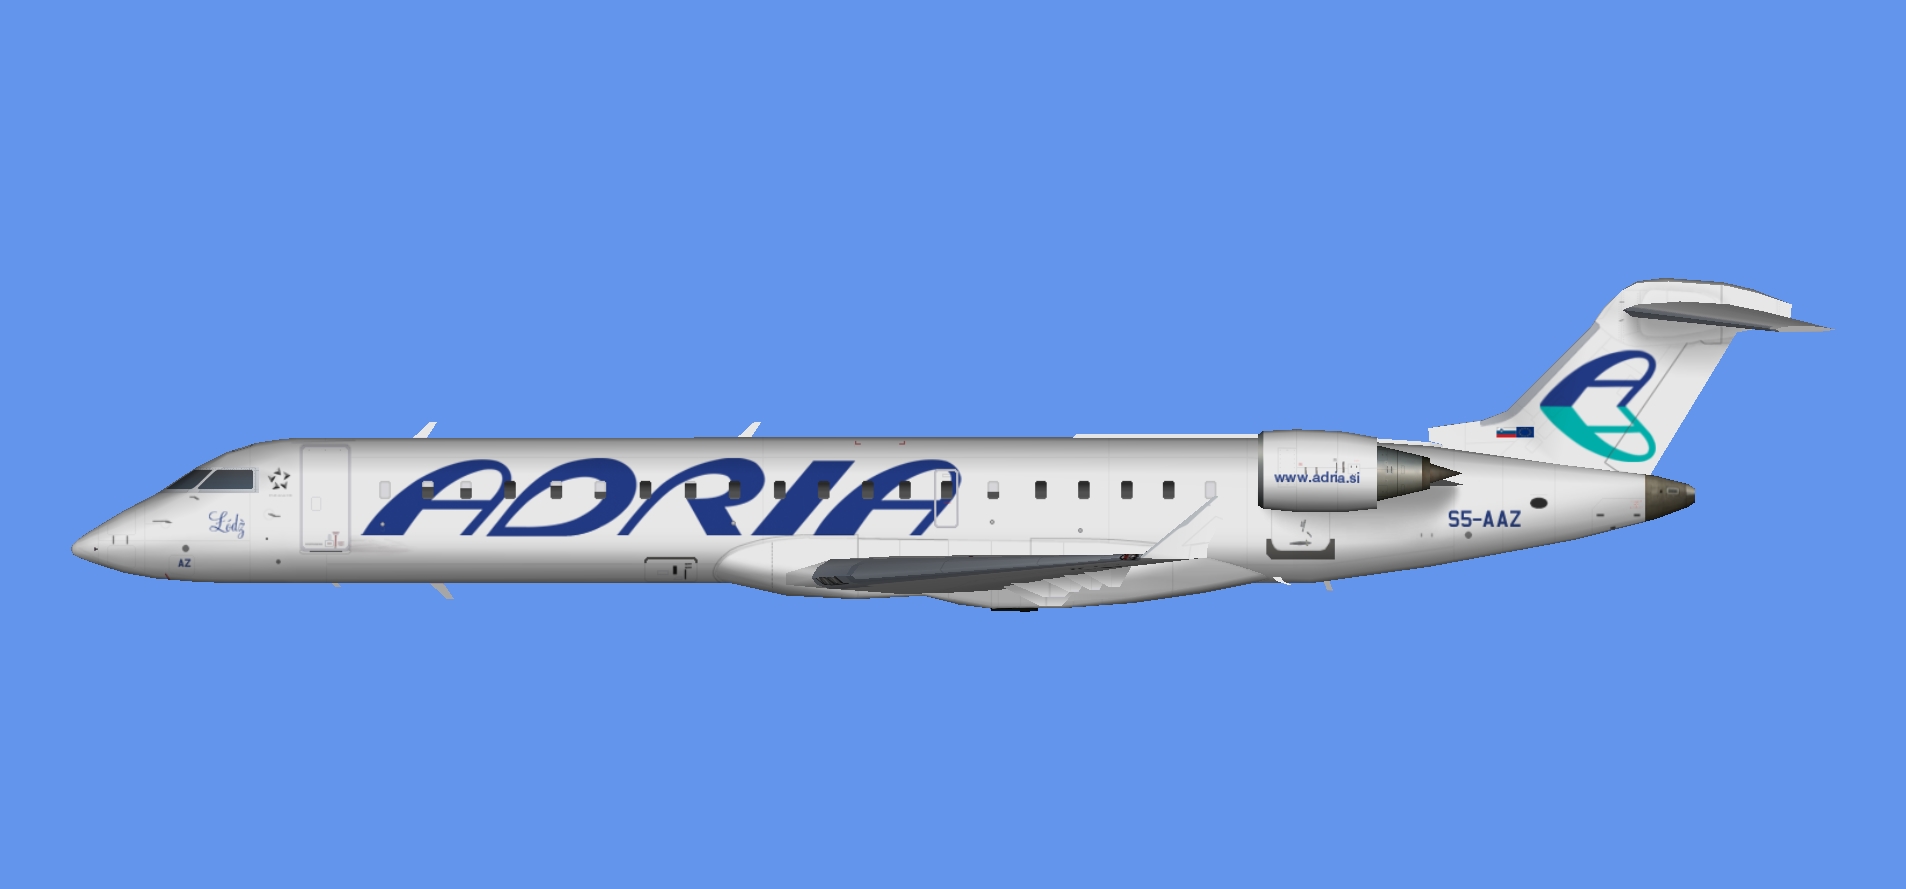 Adria Airways CRJ-700